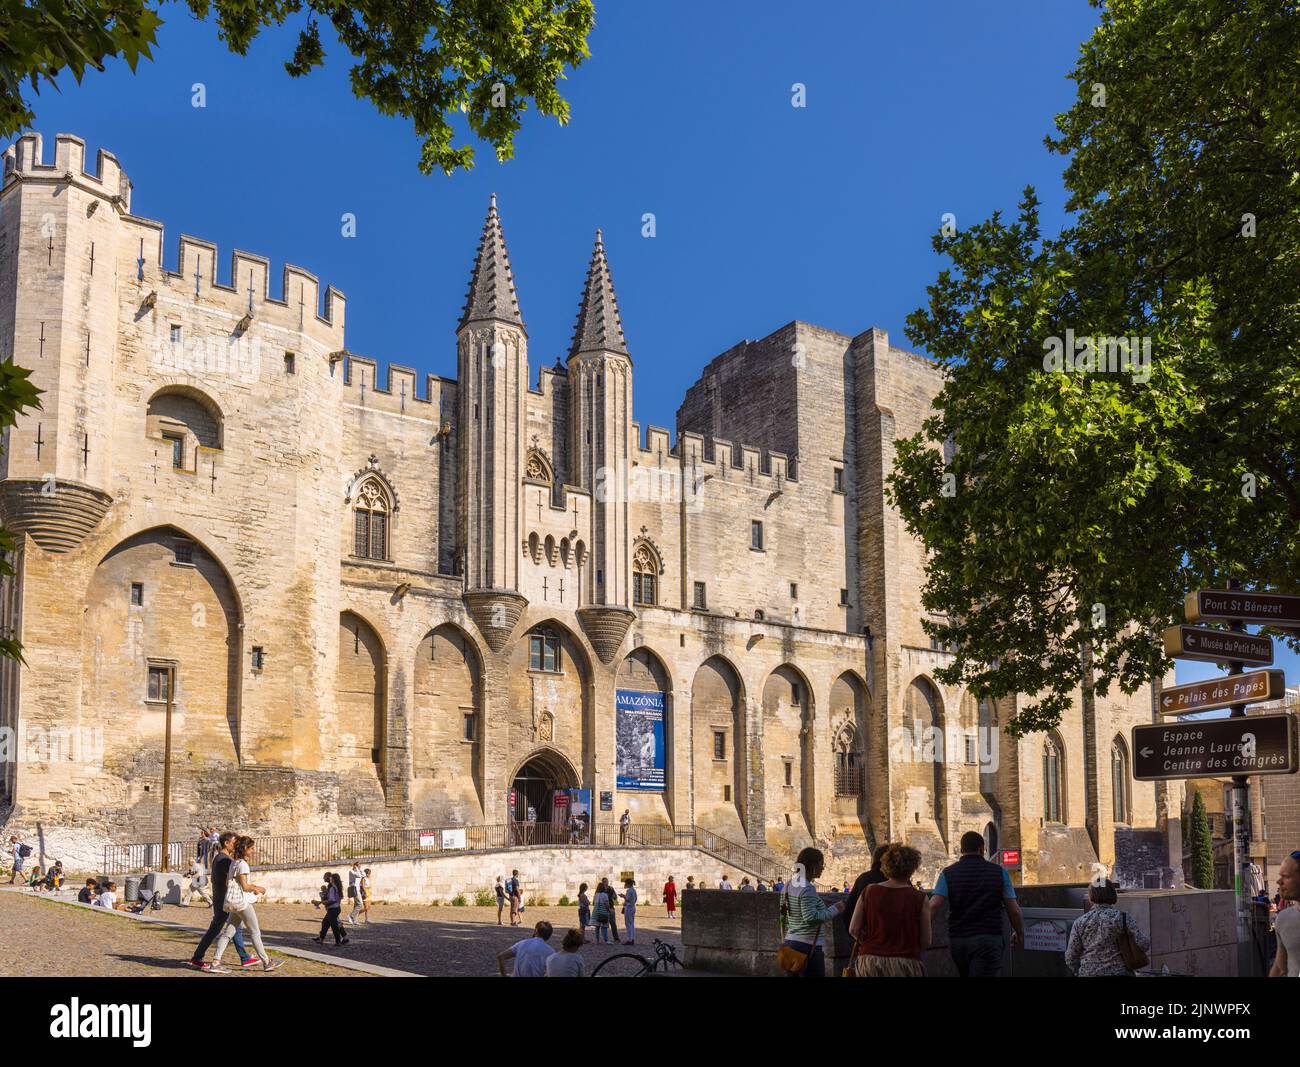 Papstpalast - Papstpalast, Avignon, Vaucluse, Frankreich. Das historische Zentrum von Avignon ist ein UNESCO-Weltkulturerbe. Stockfoto